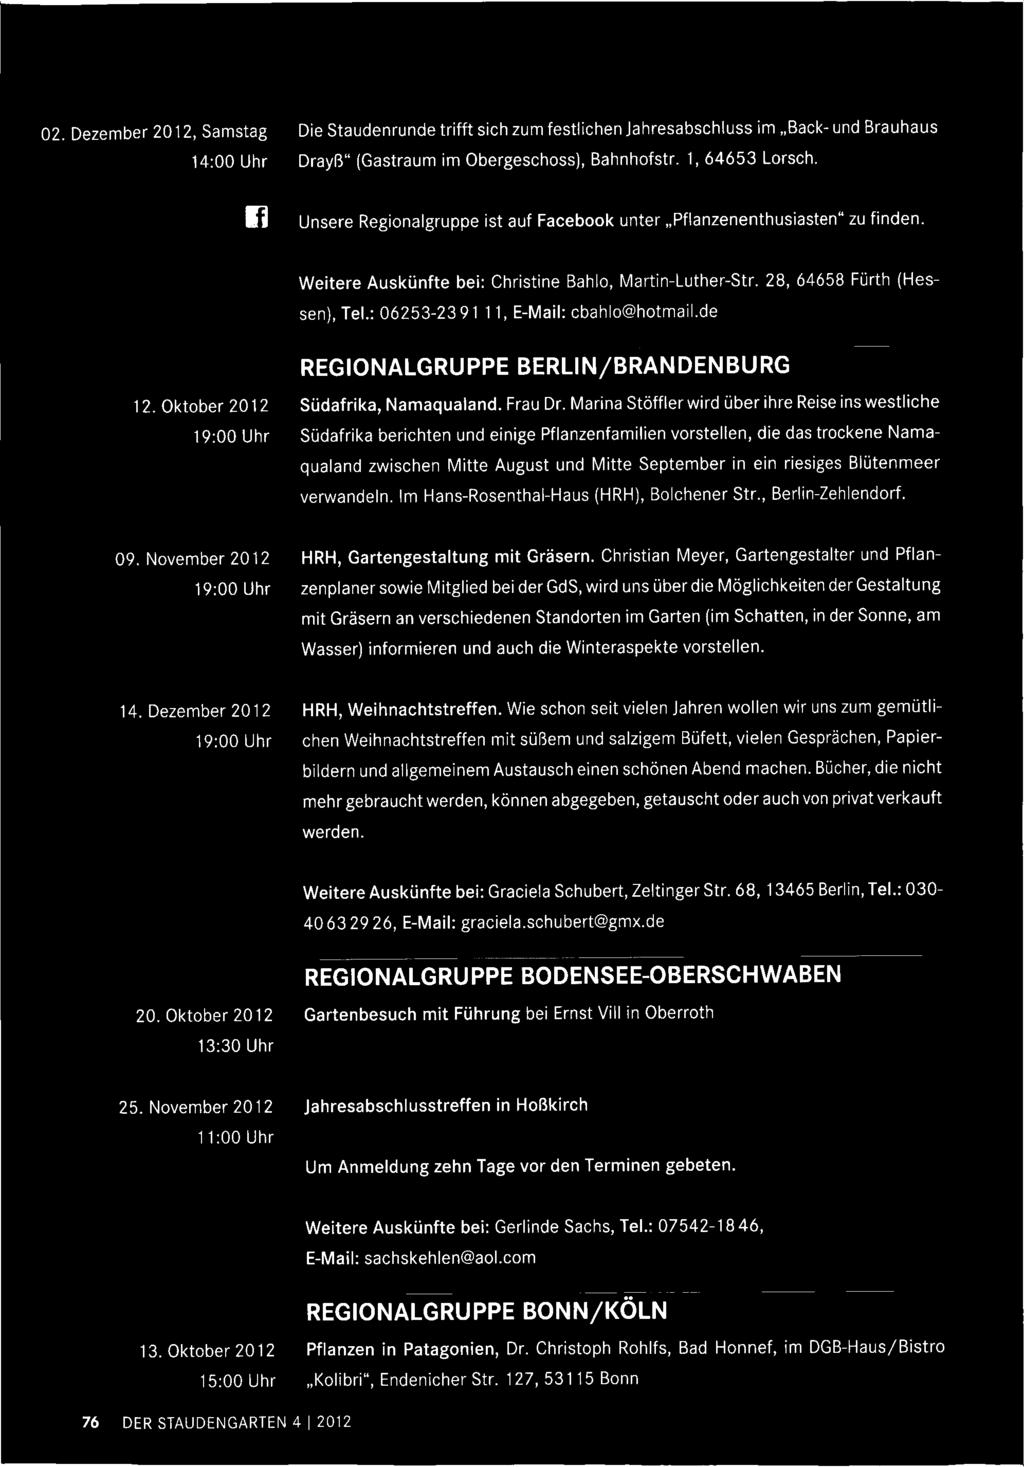 Blütenmeer verwandeln. Im Hans-Rosenthal-Haus (HRH), Bolchener Str., Berlin-Zehlendorf. 09. November 2012 19:00 Uhr HRH, Gartengestaltung mit Gräsern.